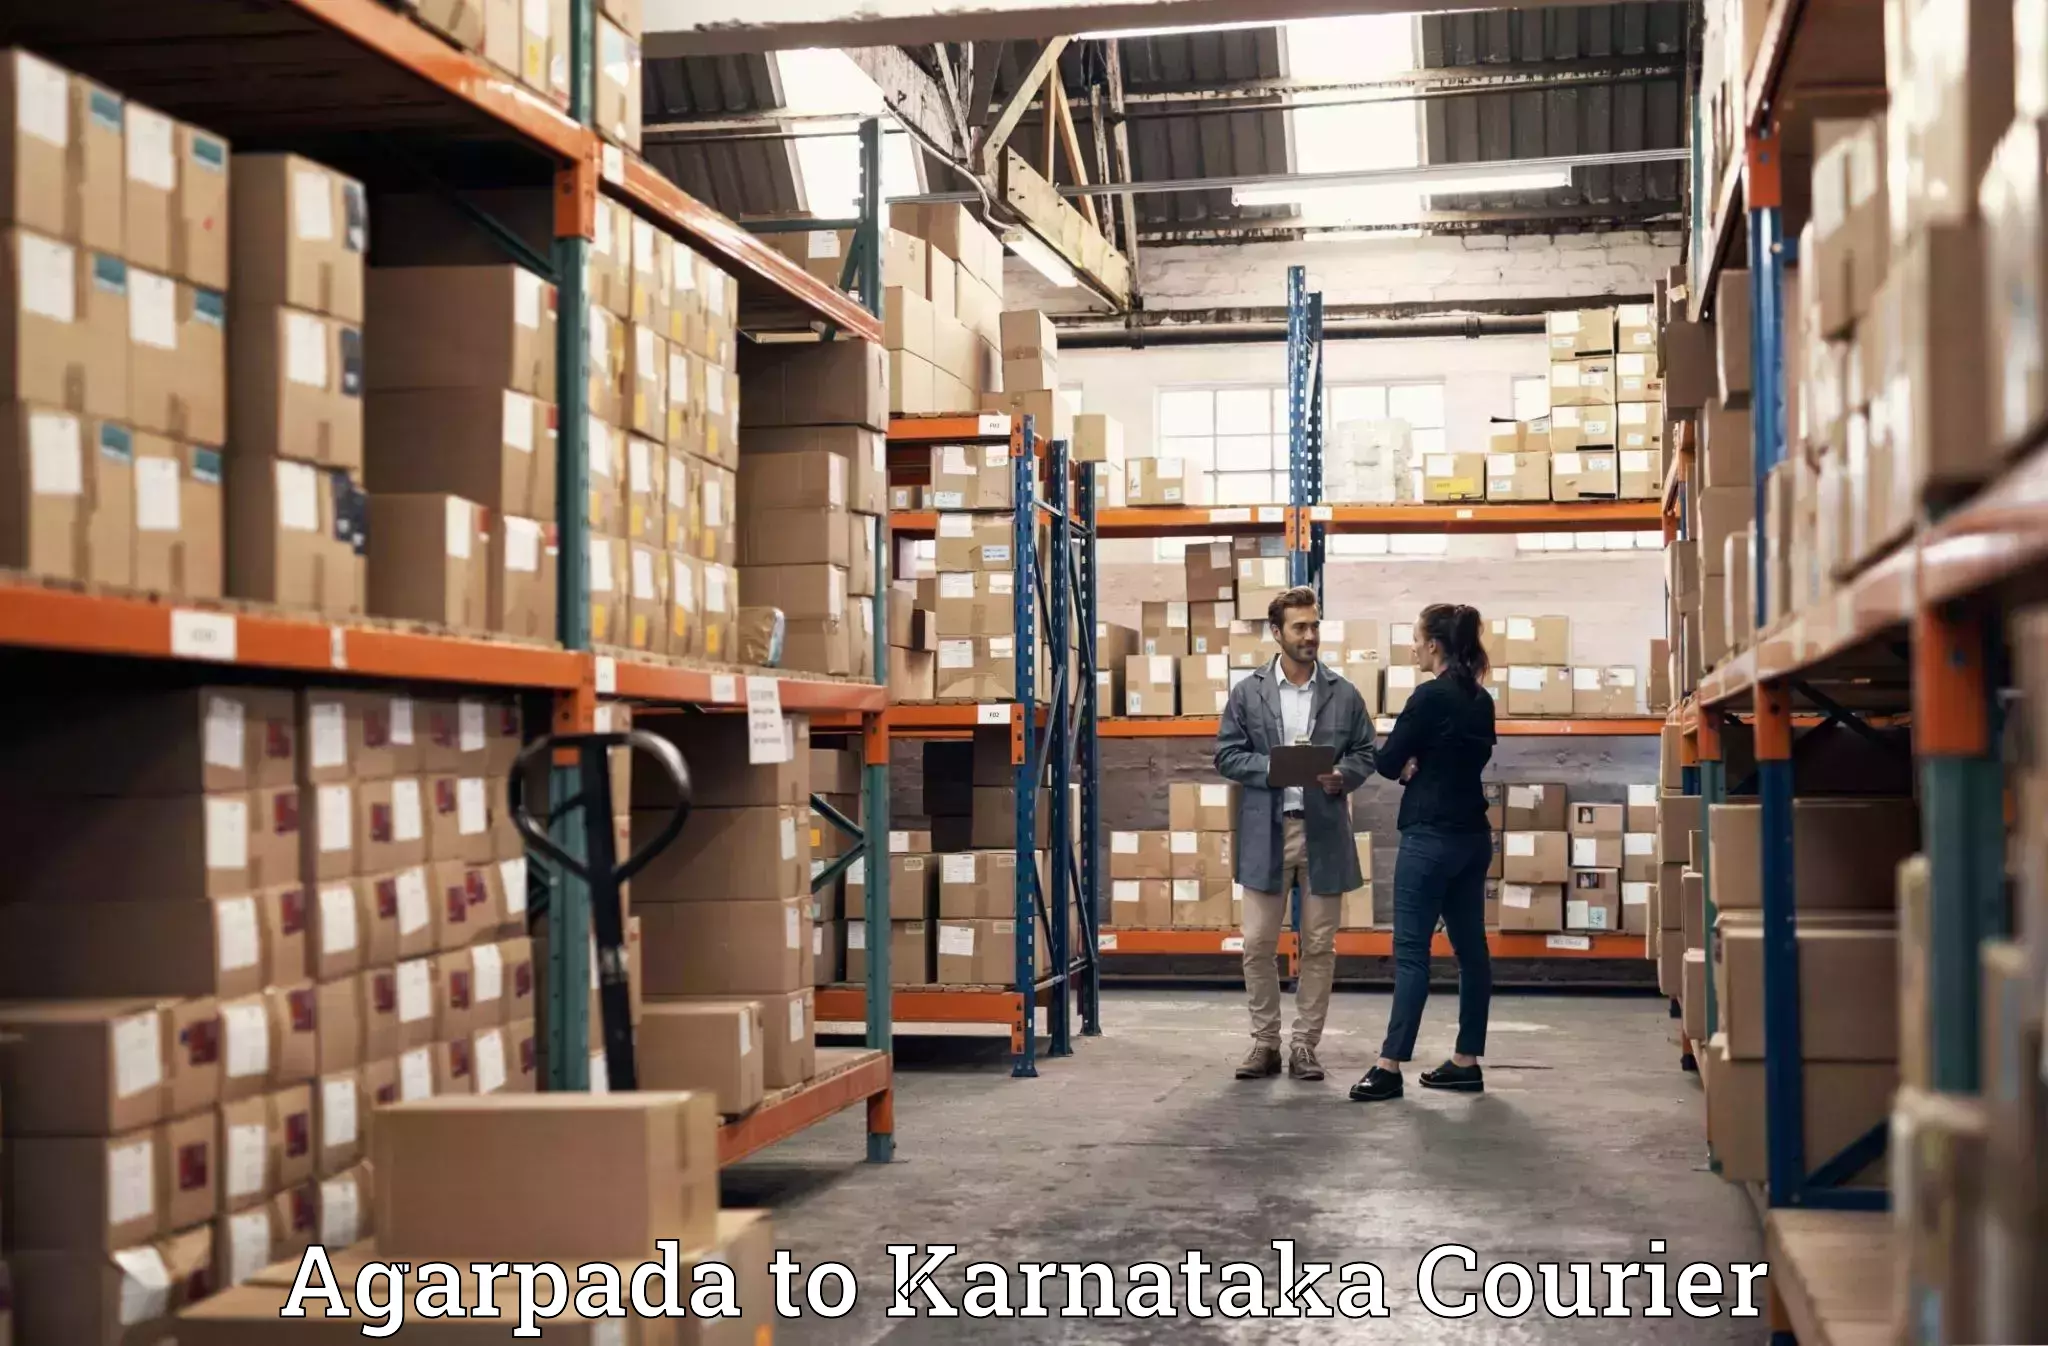 Furniture moving experts Agarpada to Karnataka